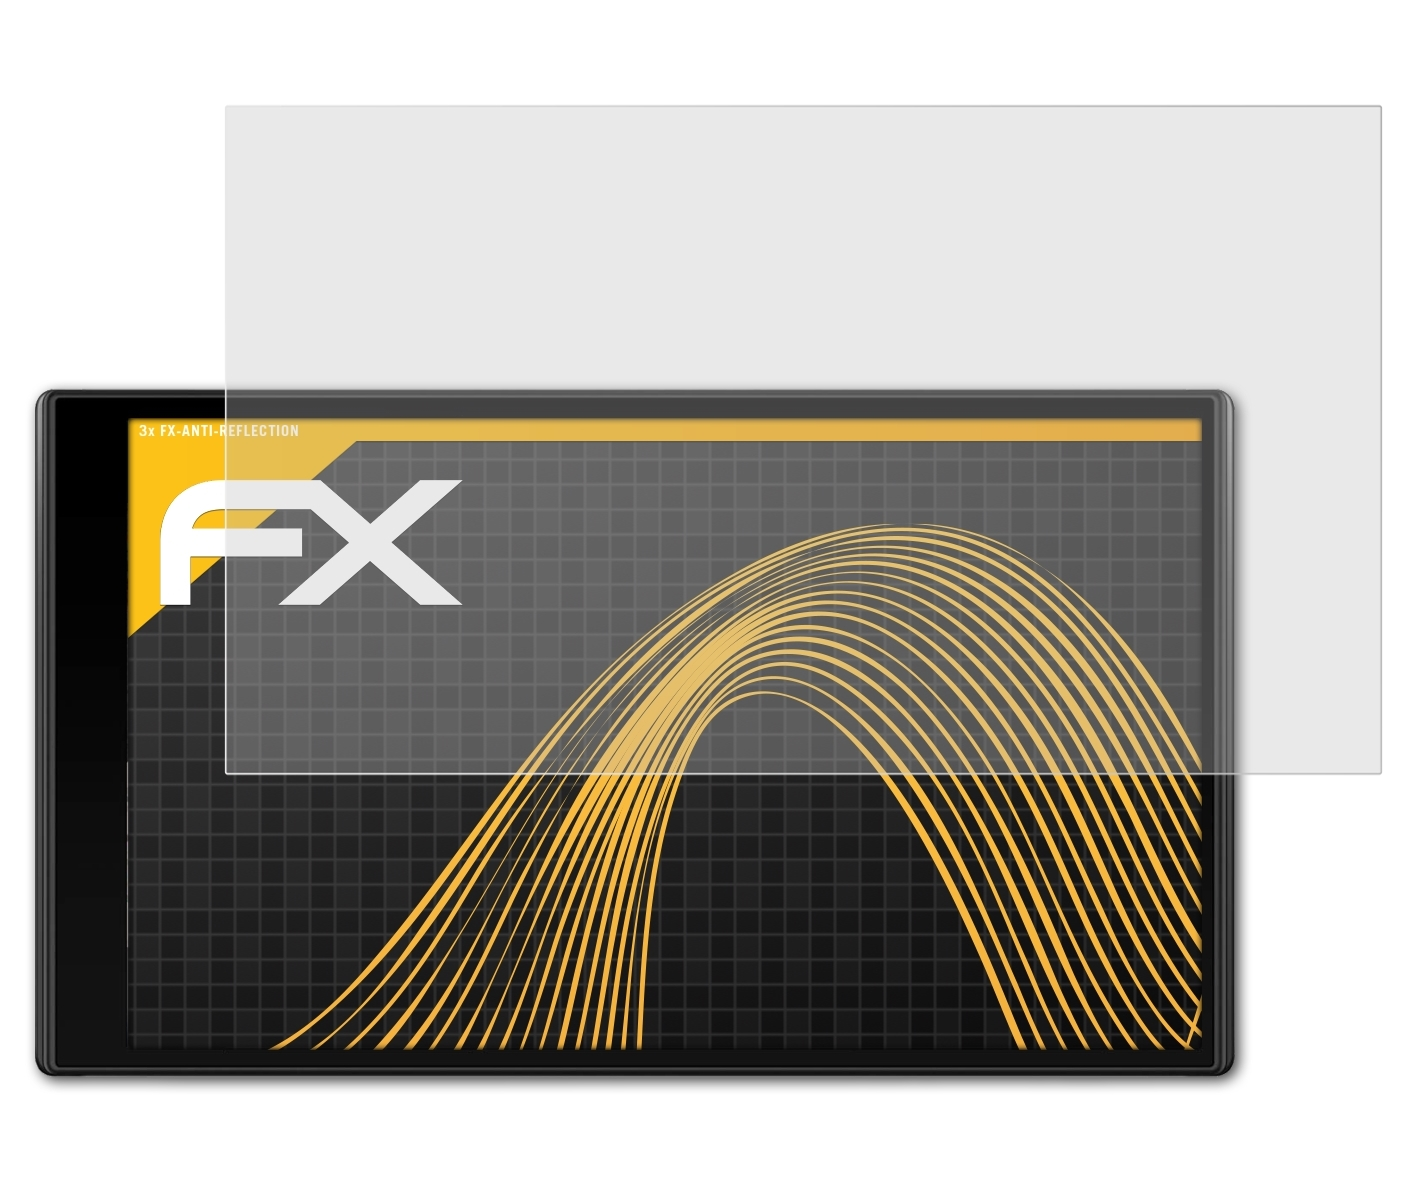 ATFOLIX 3x DriveSmart FX-Antireflex Garmin Displayschutz(für 65)